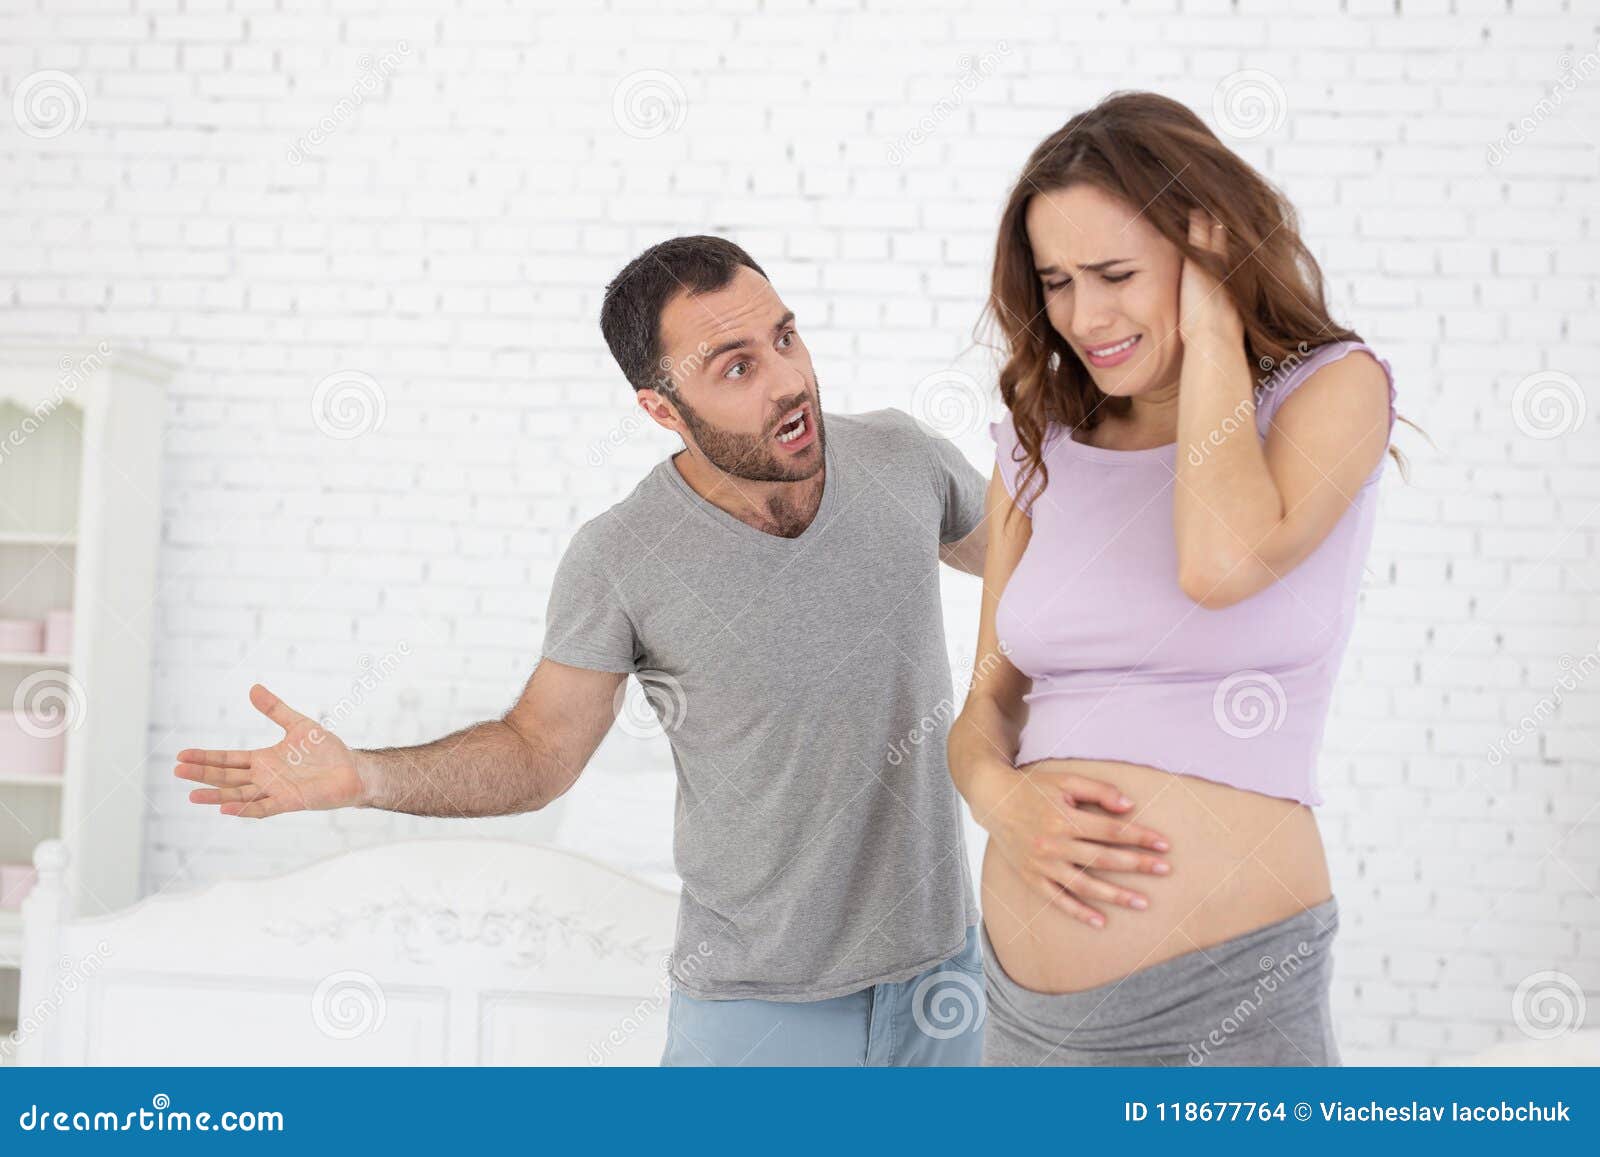 Чтоб жена забеременела. Кричит на беременную.